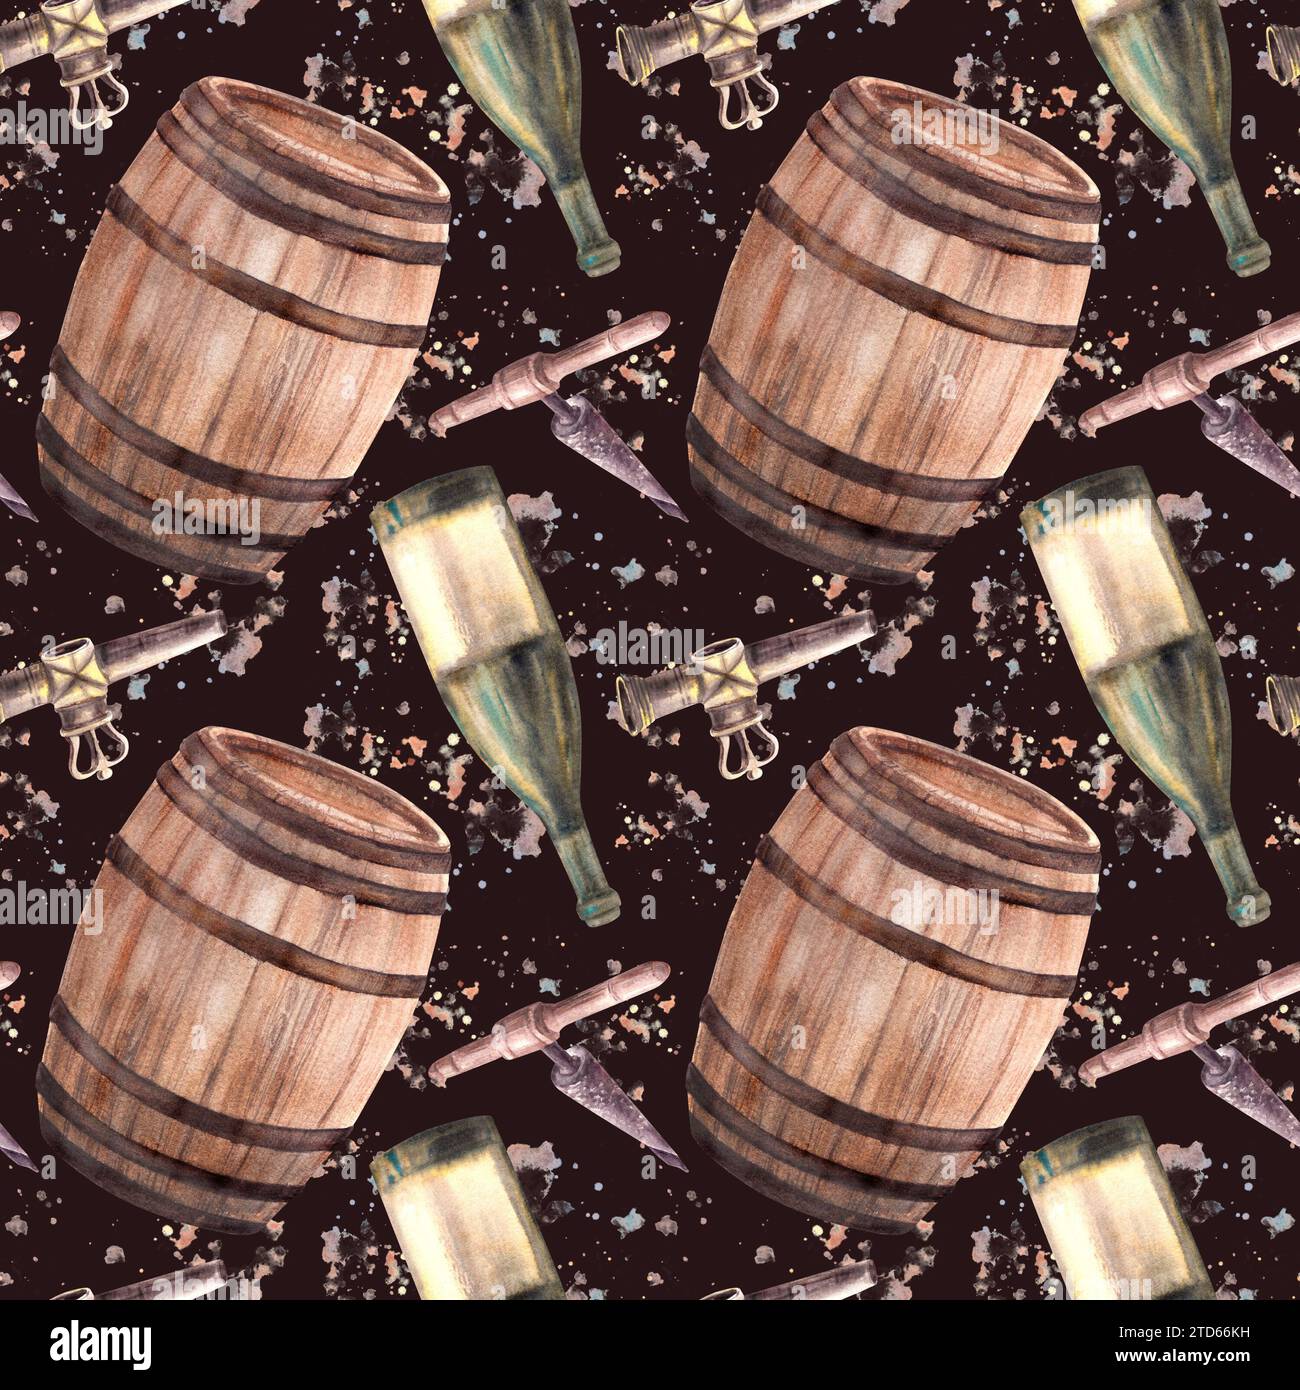 Eine Flasche Weißwein, Holzfässer, Wasserhahn und Korkenzieher mit Aquarellflecken. Nahtlose Zeichnung von Hand. Clipart für die Weinherstellung Stockfoto